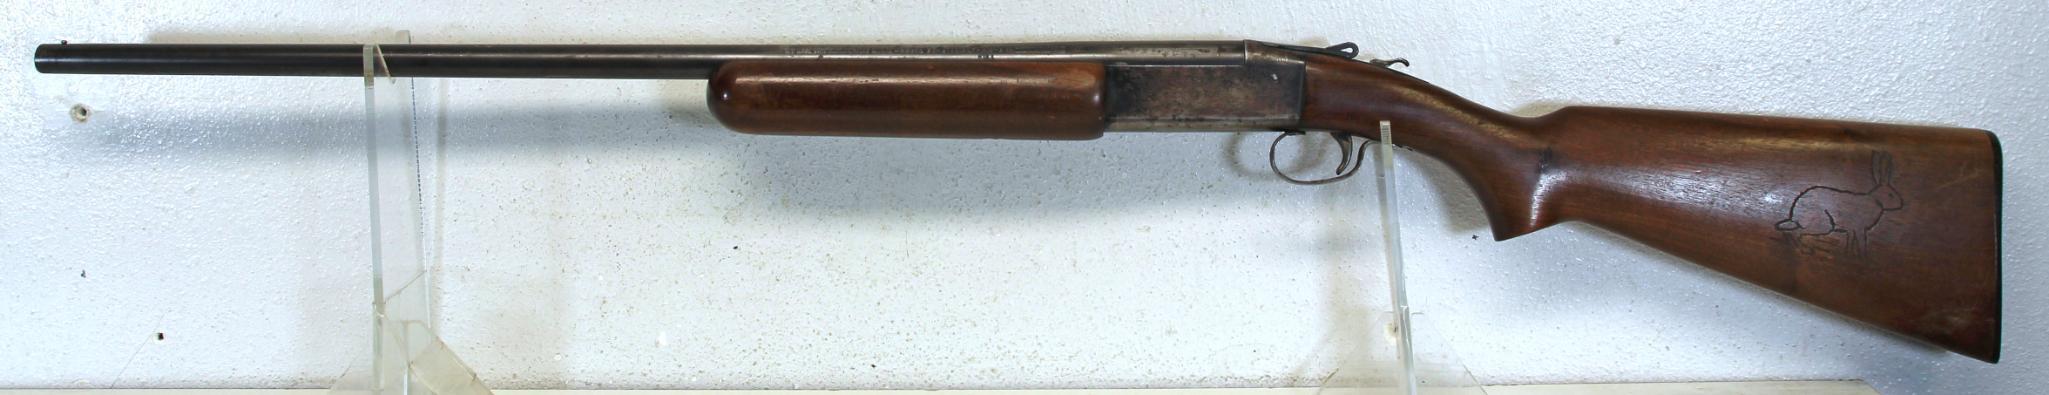 Winchester Model 37 .410 Ga. Single Shot Shotgun 26" Plain Barrel... 3" Chamber... Full Choke... Car